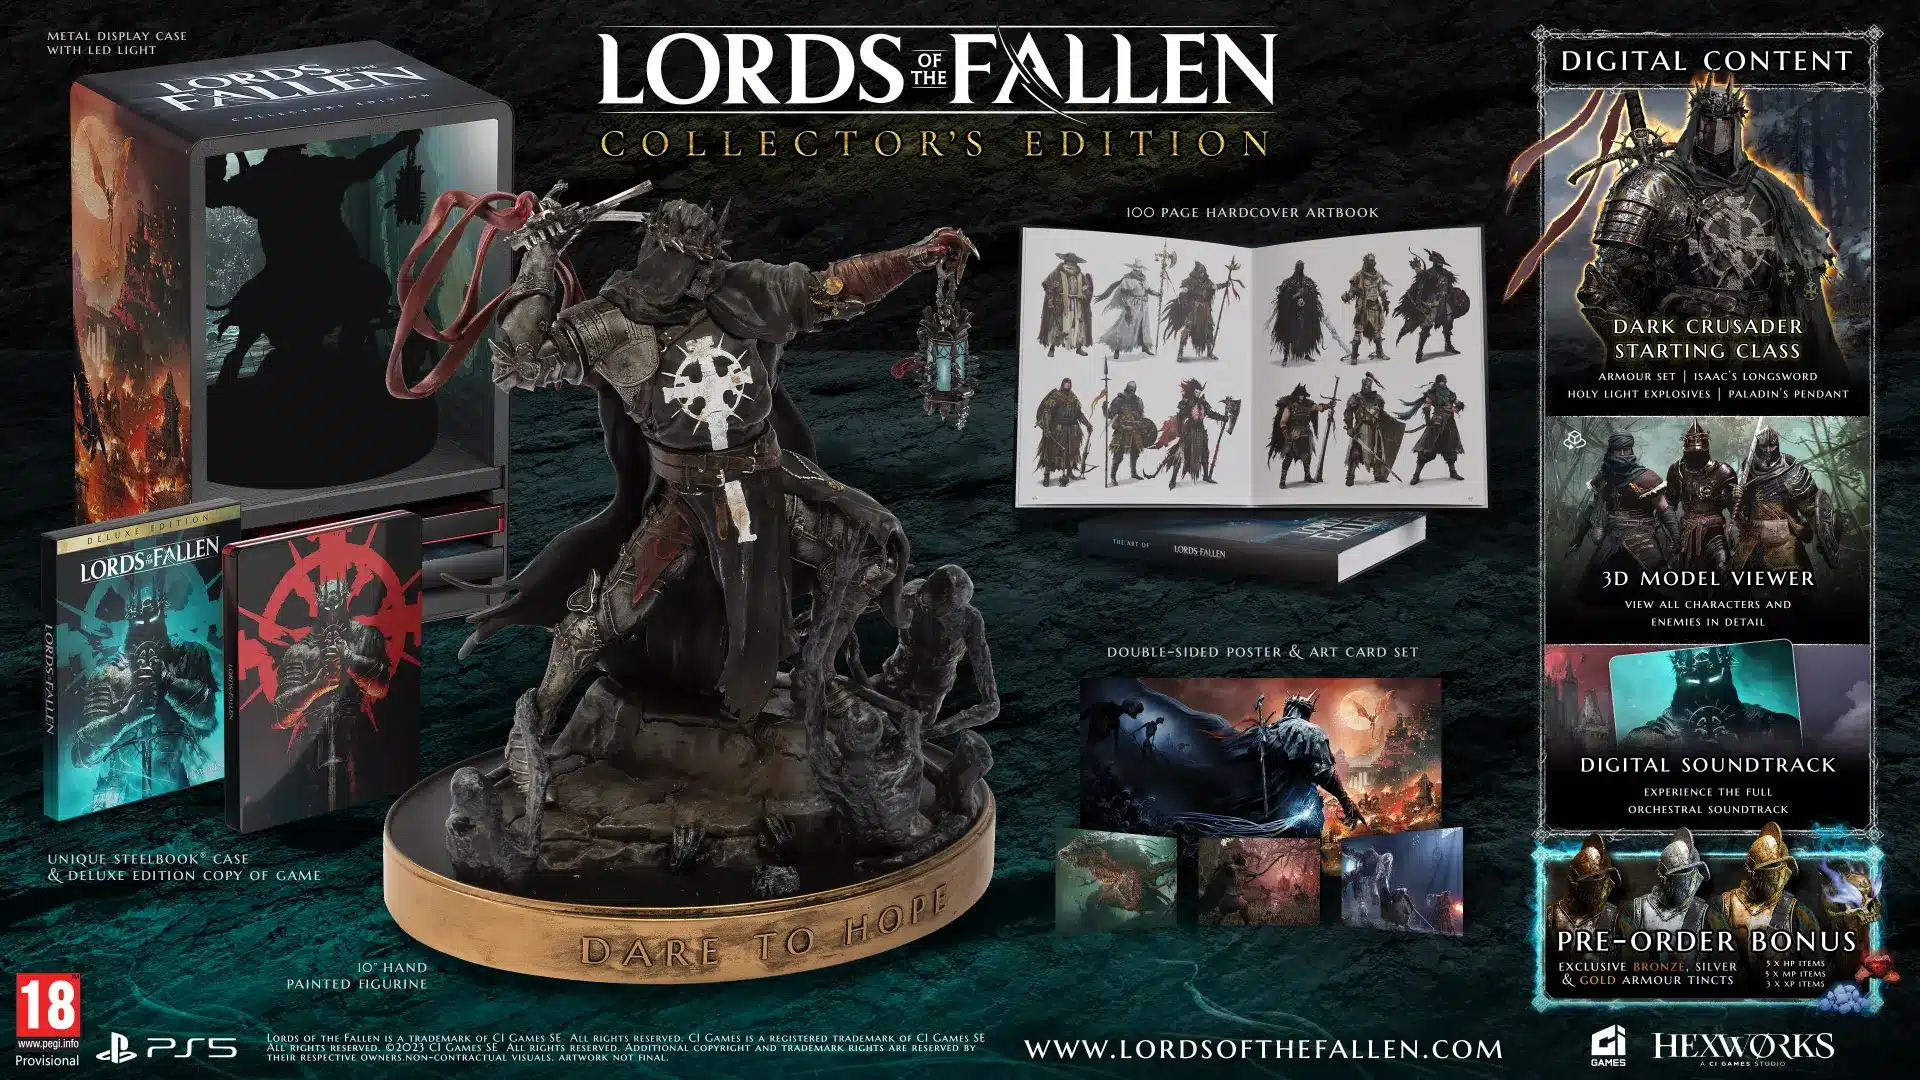 Lords of the Fallen uscirà venerdì 13 ottobre: trailer, edizioni e bonus preorder